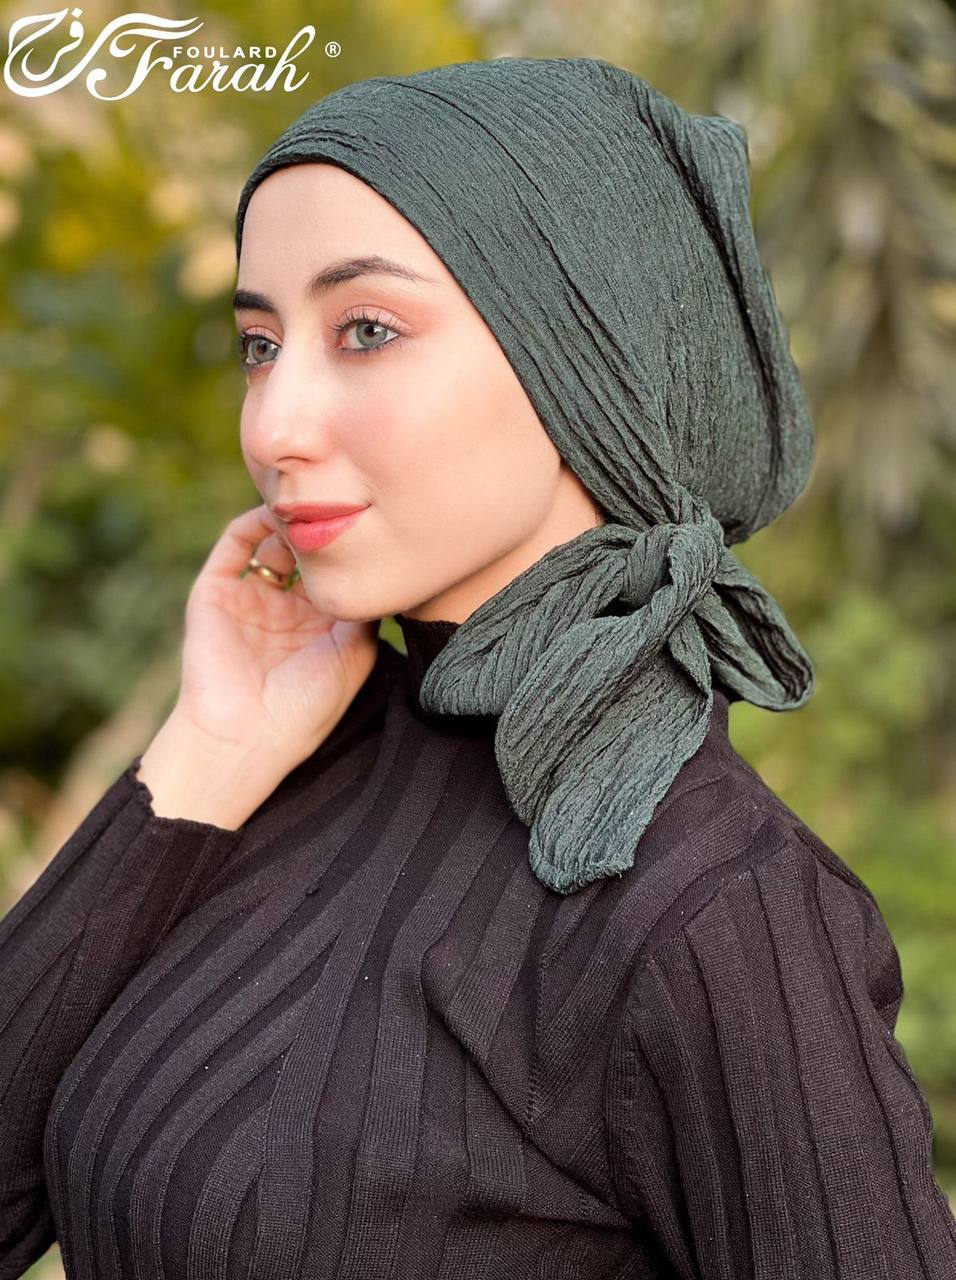 Elegant Pleated Turban Hijab - Stylish Headwrap for Modest Fashion - Grey Asparagus